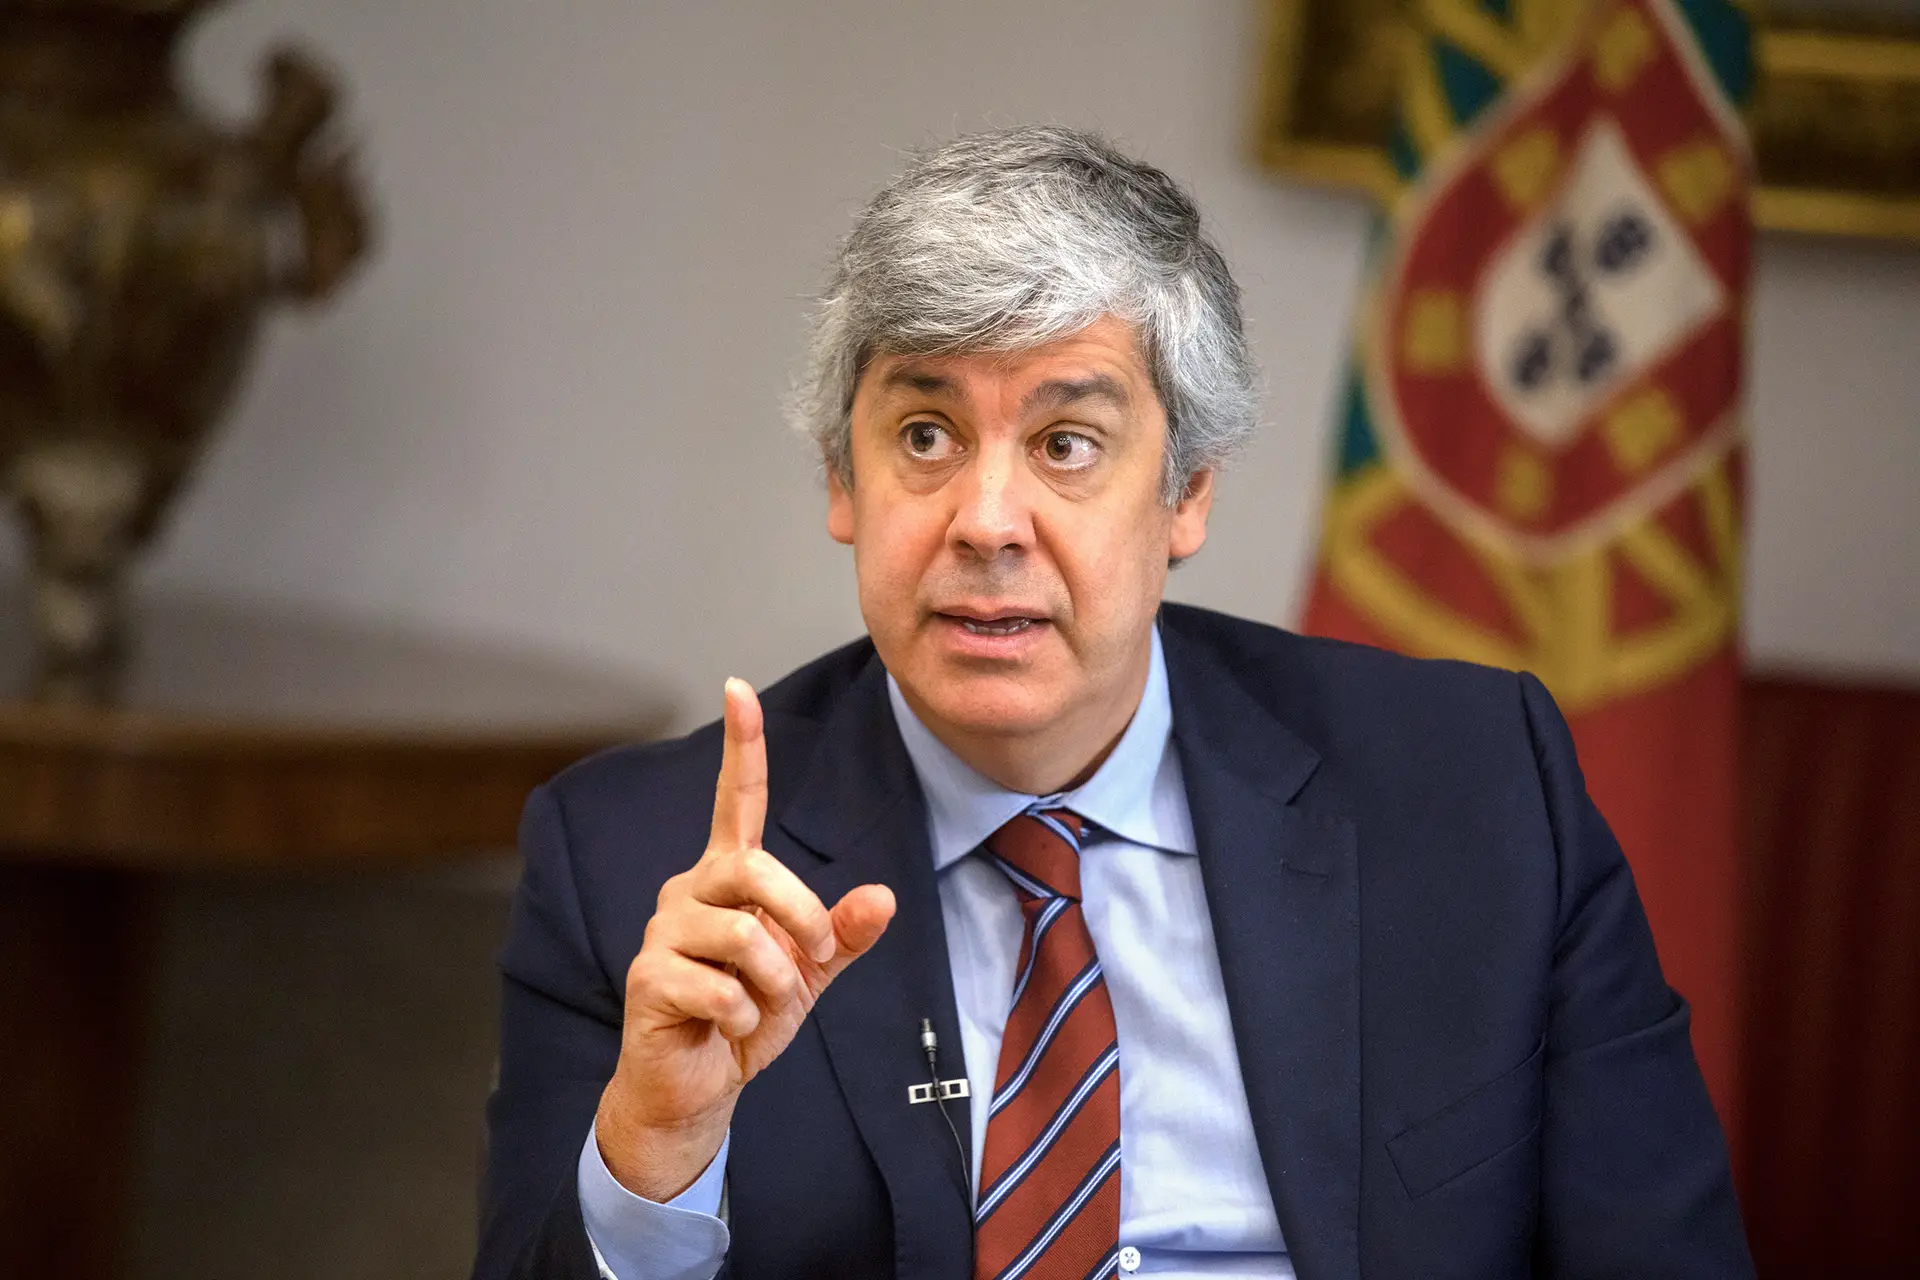 Banco multado em €1 milhão por não evitar dinheiro sujo, mas Banco de Portugal oculta o nome